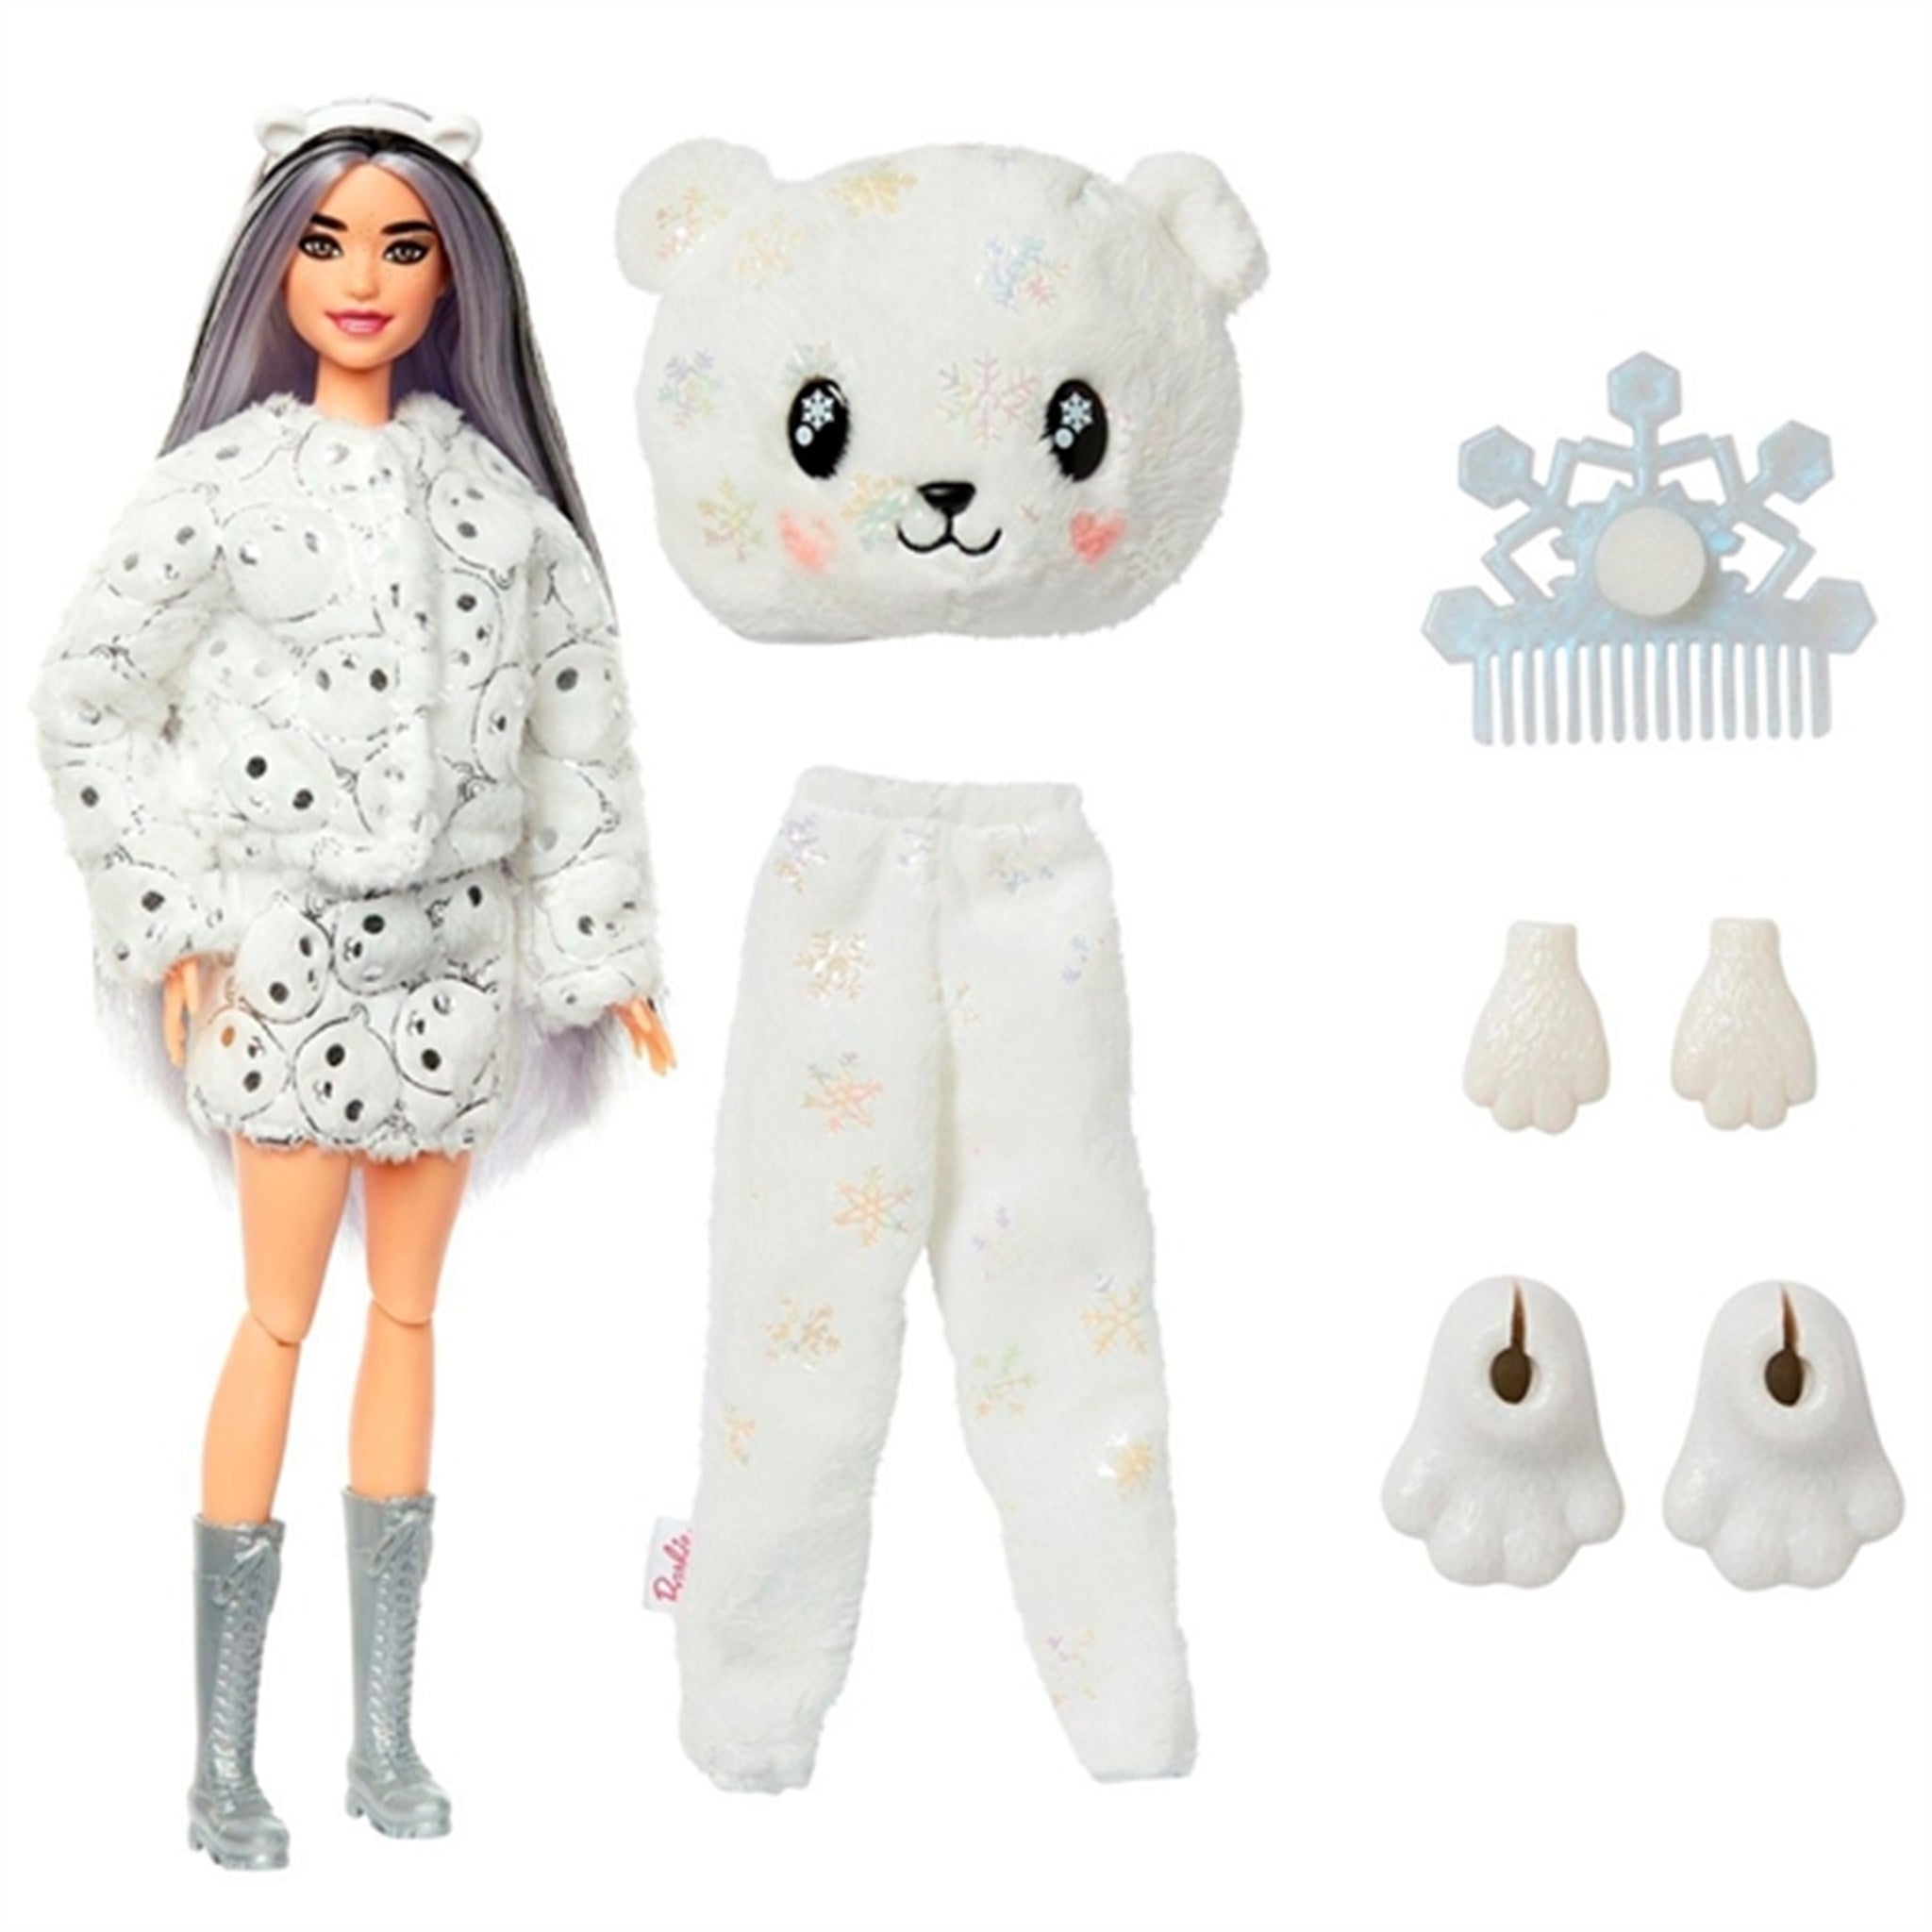 Barbie Cutie Reveal Winter Sparkle - Polar Bear 2